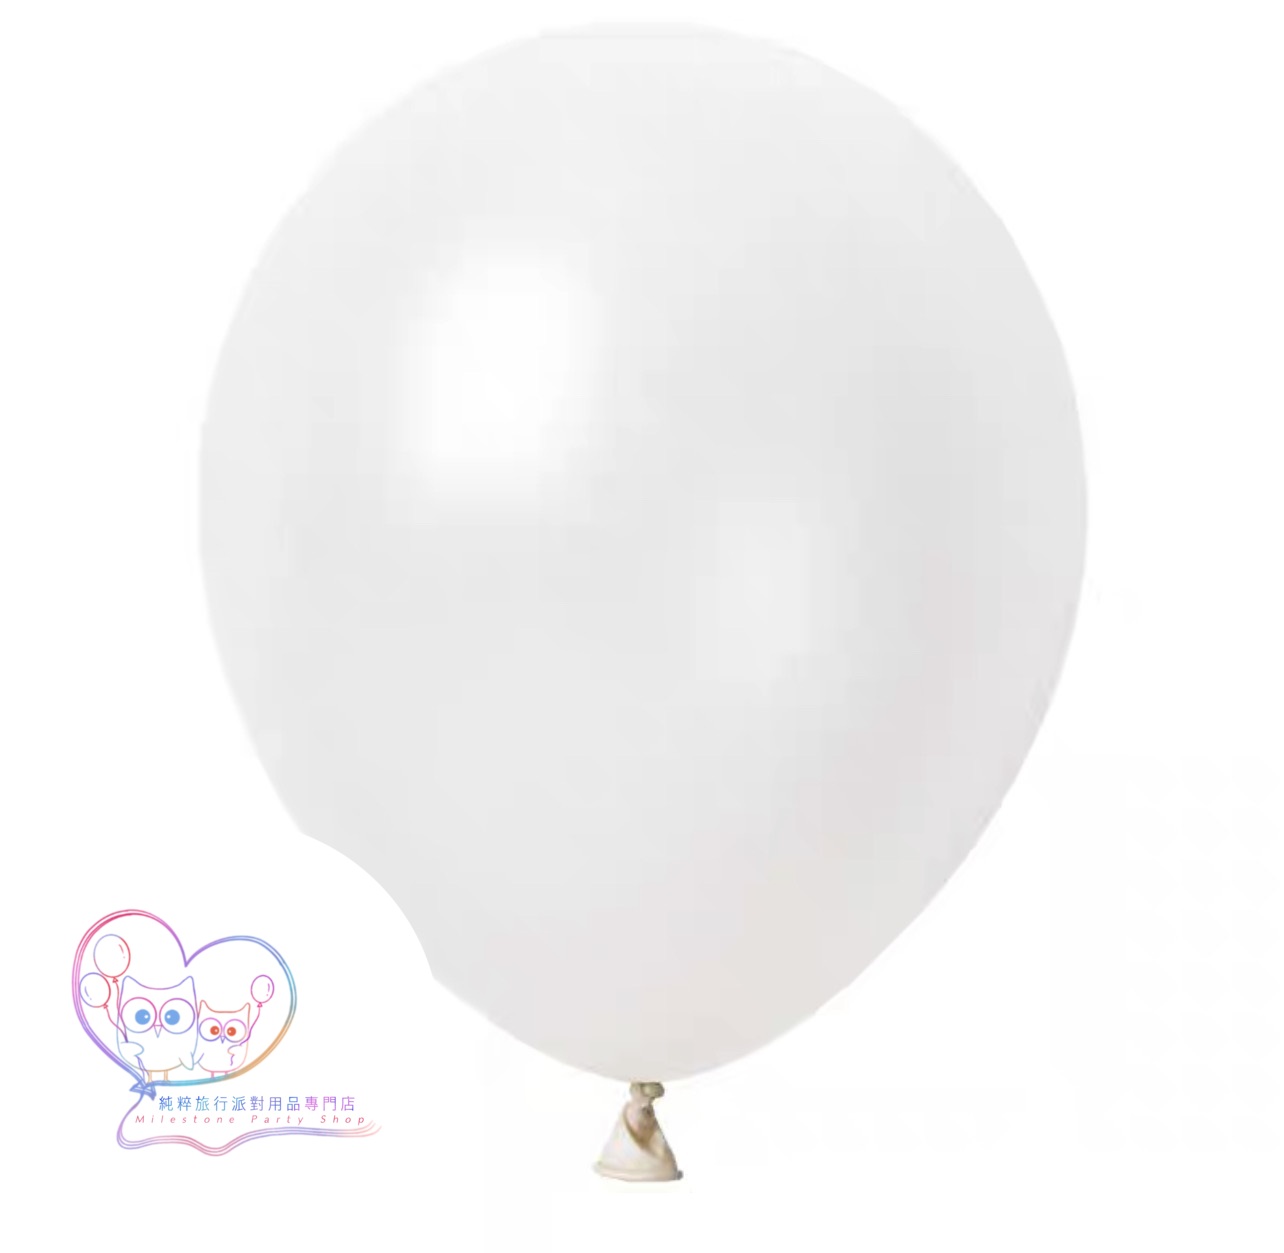 5吋氣球 (珠光白色) (1pc) 5LBC4